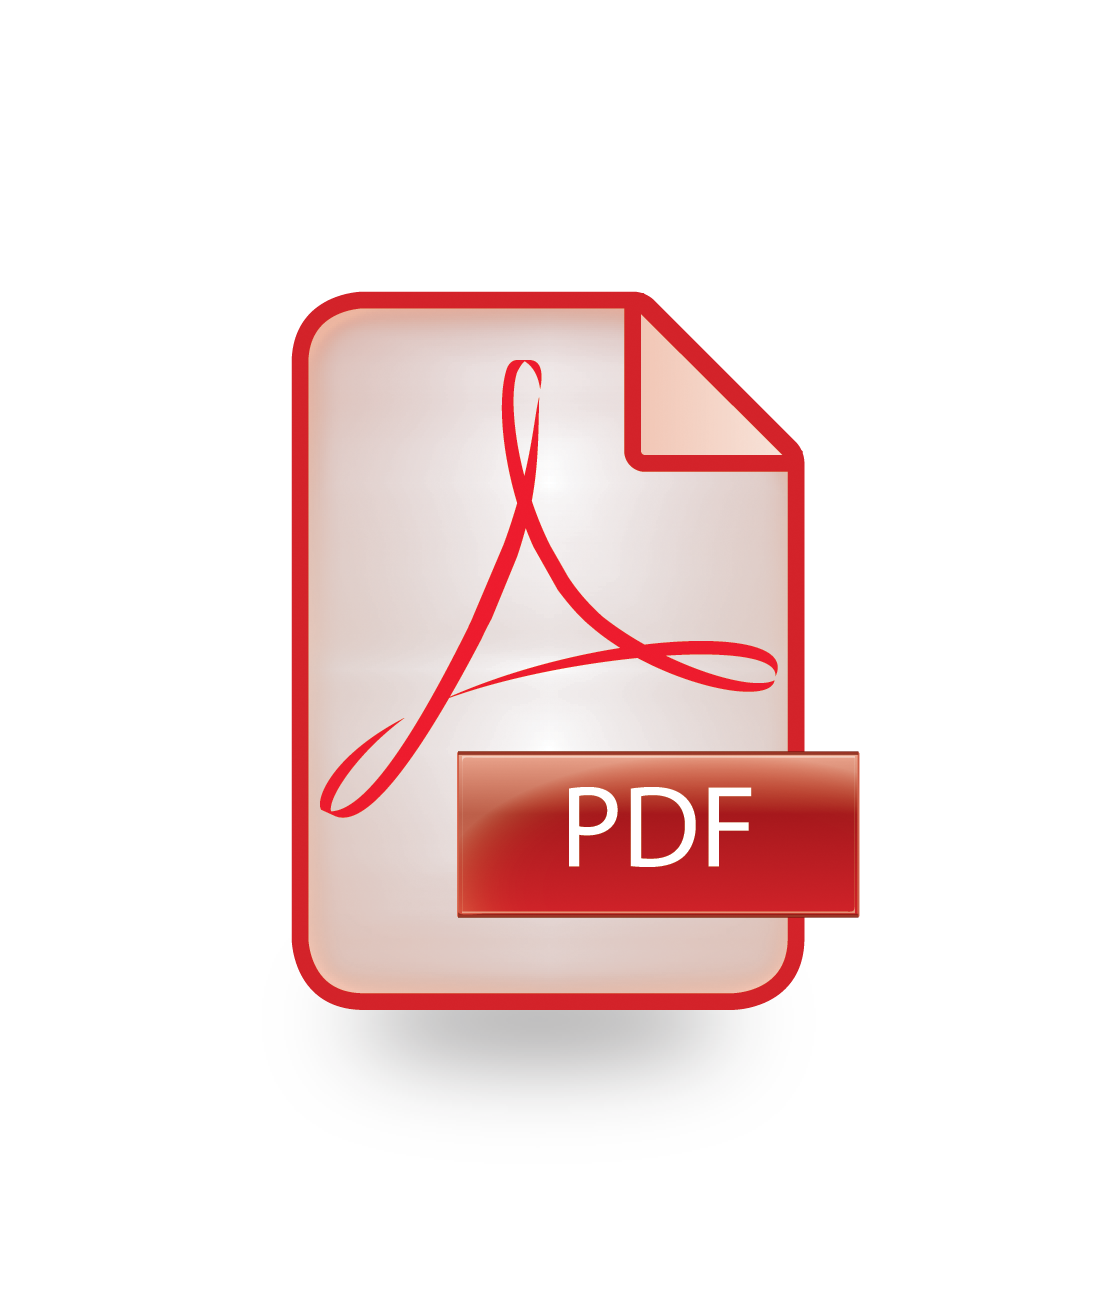 PDF Icon - File Types Icons 